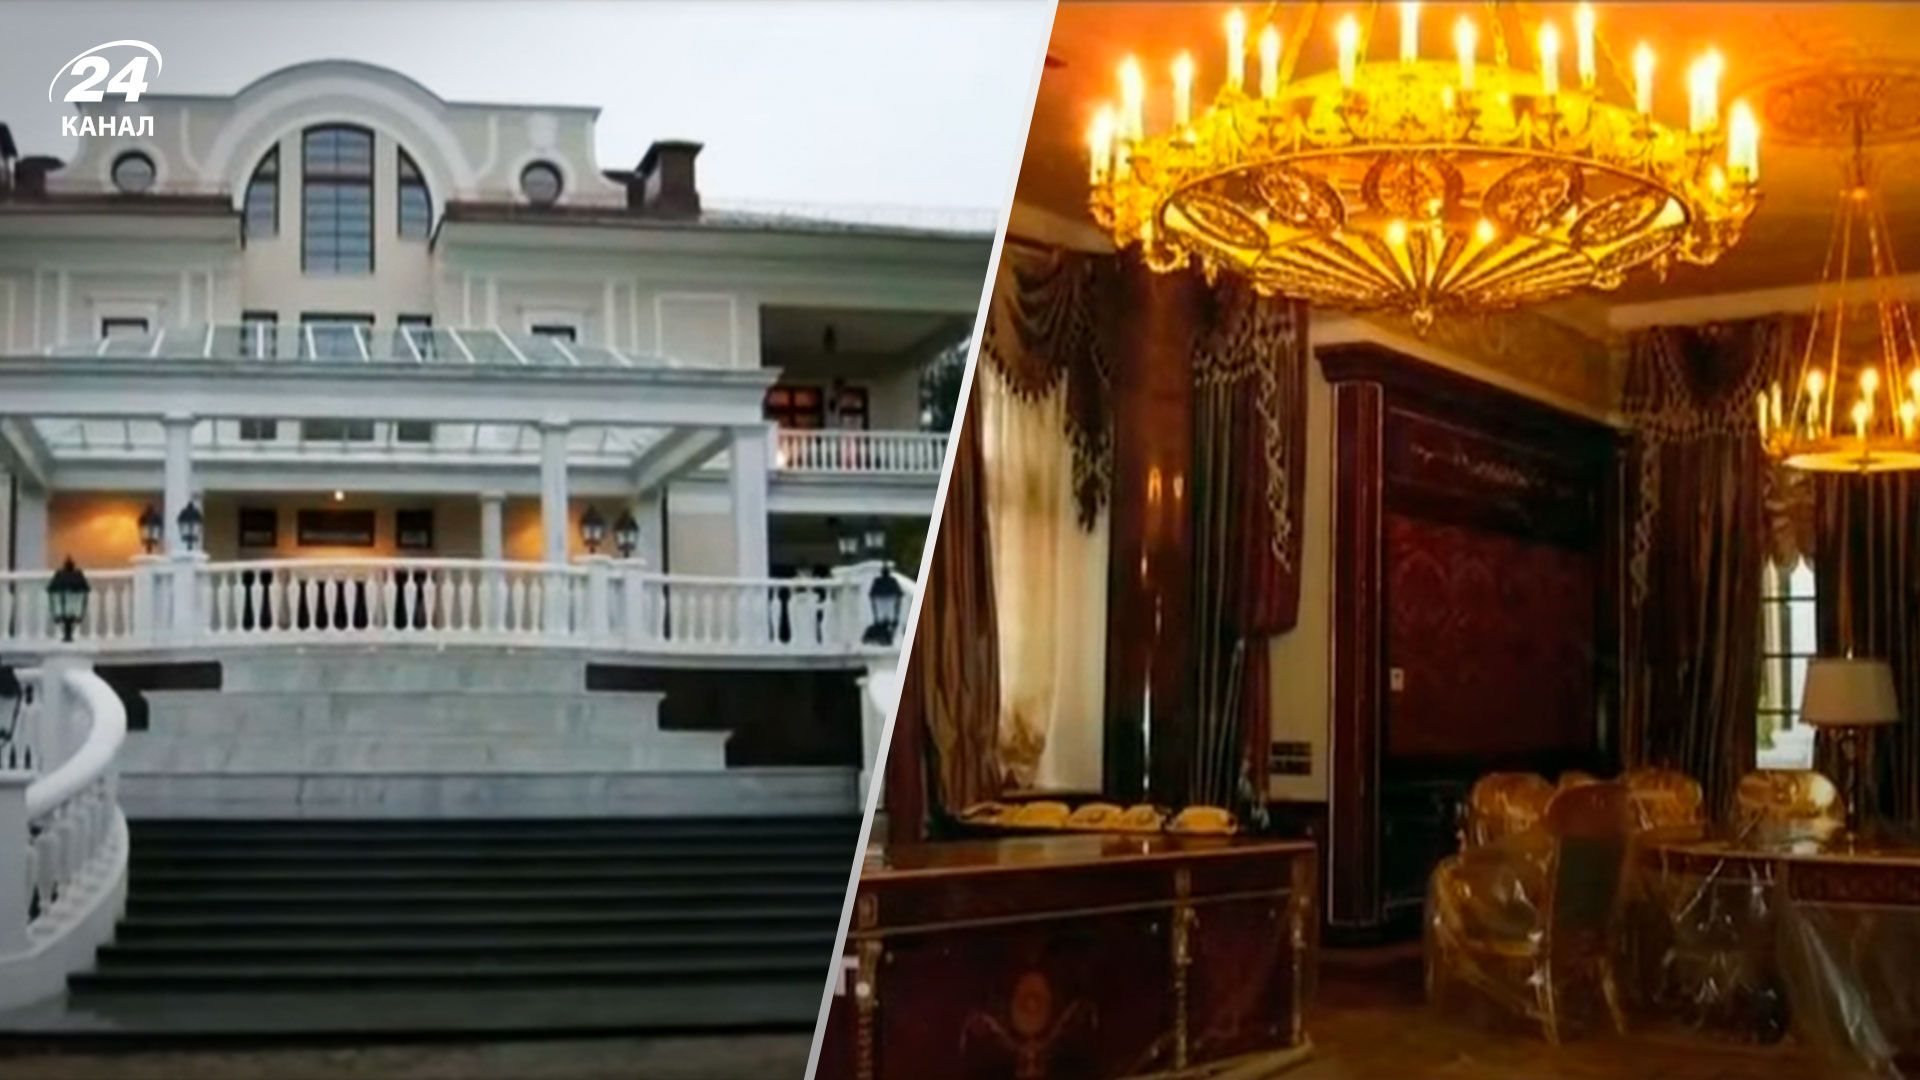 Резиденции Путина - как выглядит его дворец и пентхаус Кабаевой - 24 Канал